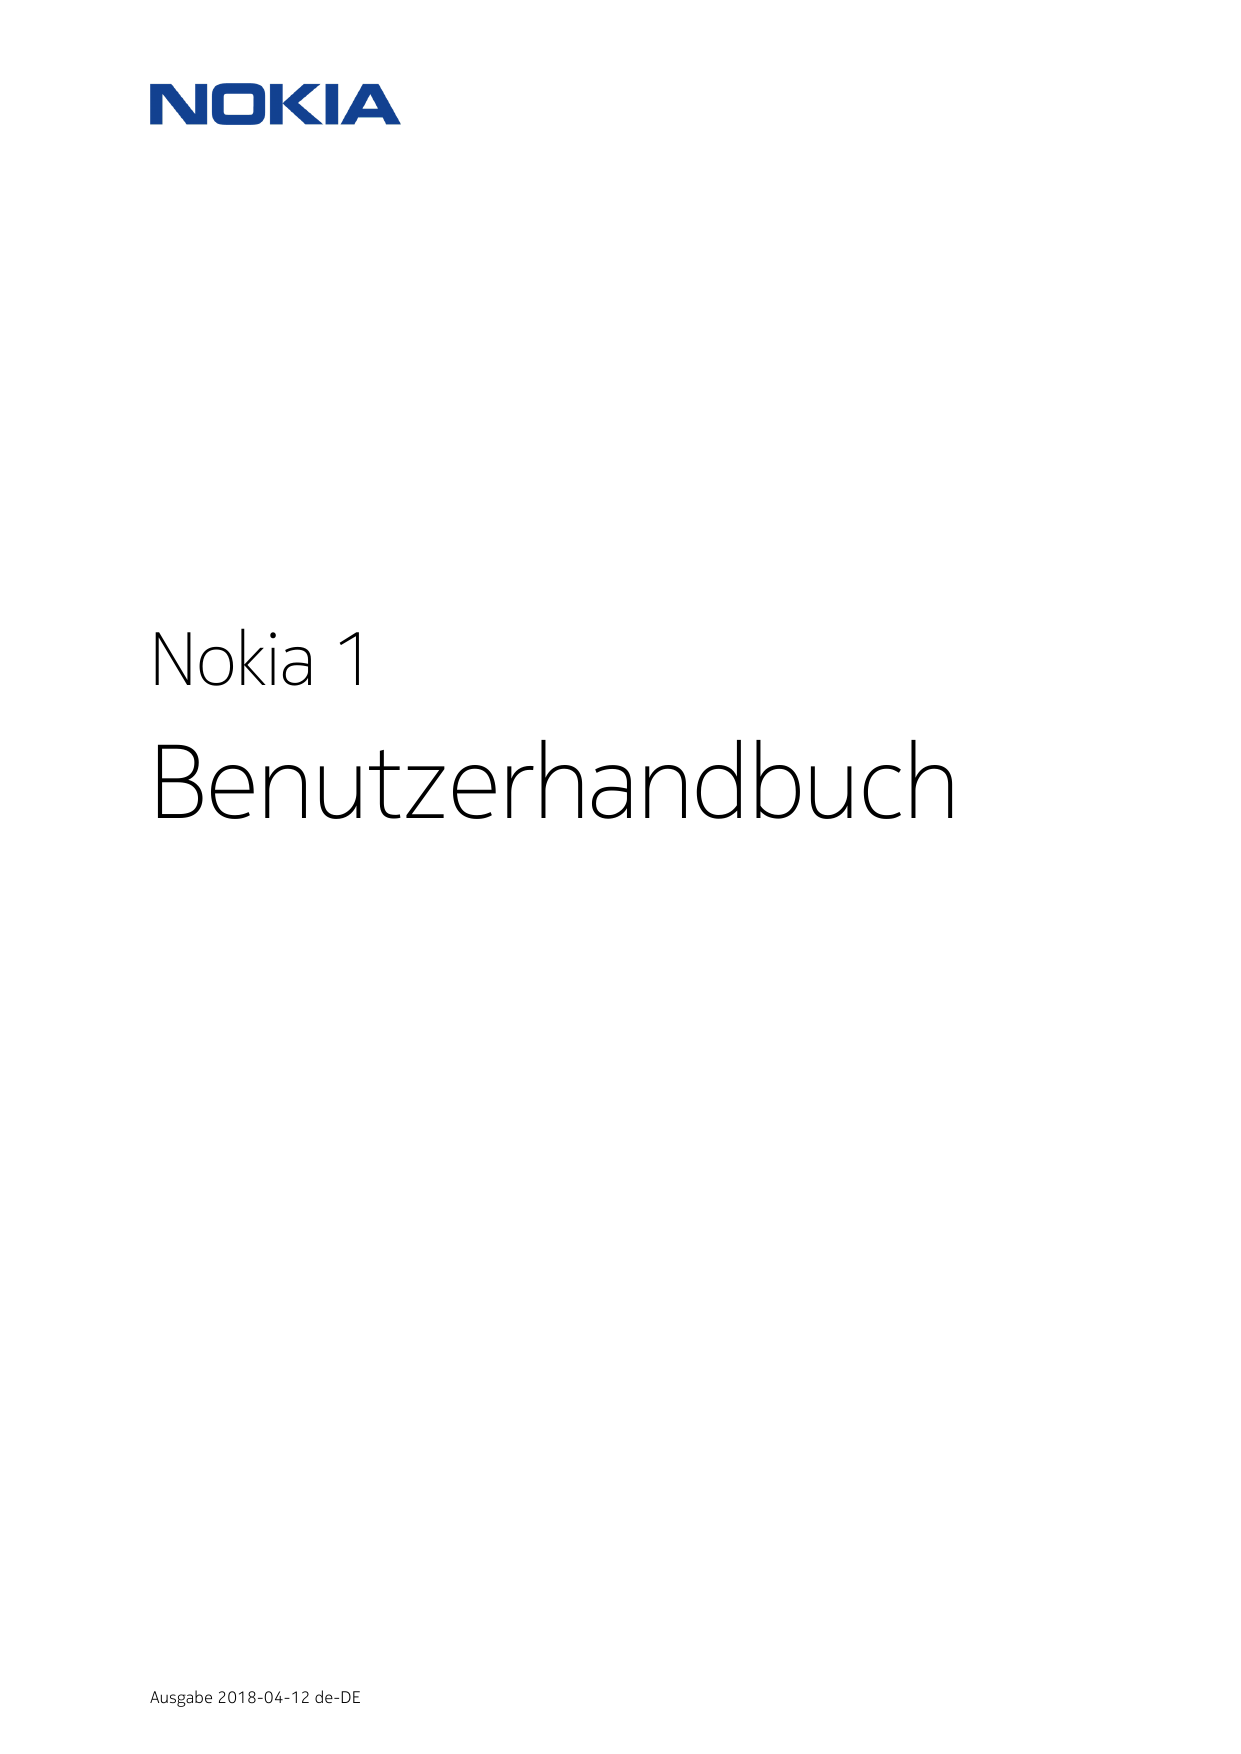 Nokia 1BenutzerhandbuchAusgabe 2018-04-12 de-DE